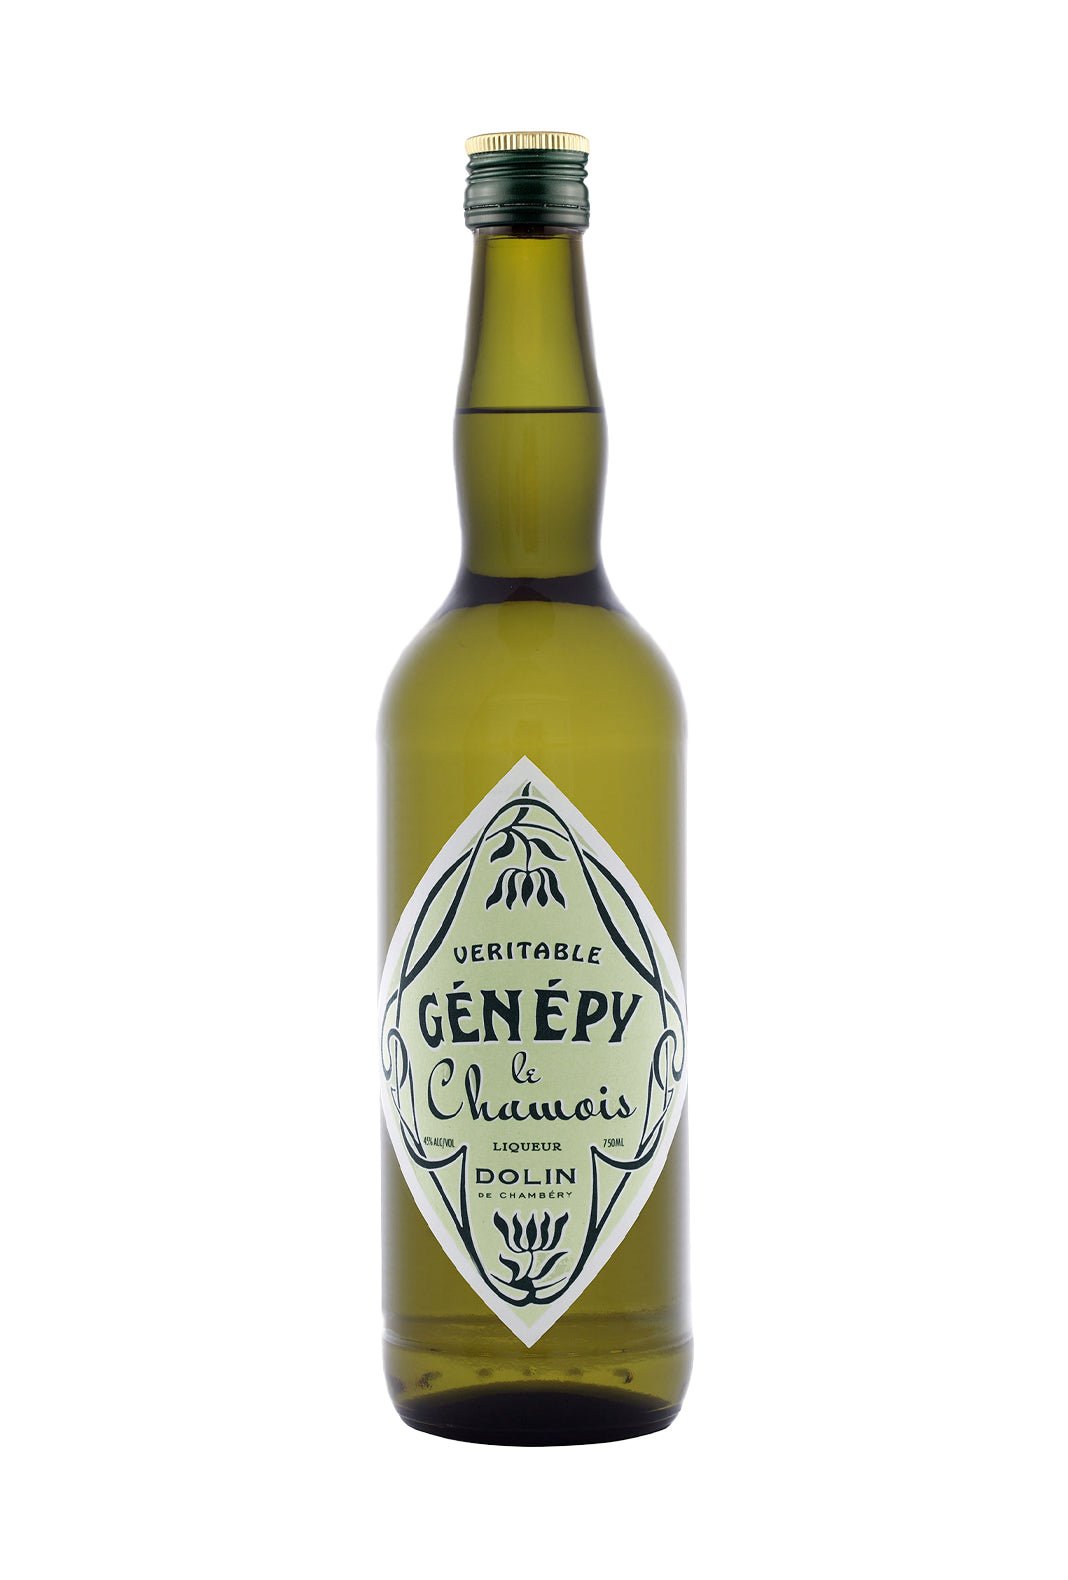 Dolin Liqueur de Genepi Chamois 45% 750ml | Liqueurs | Shop online at Spirits of France